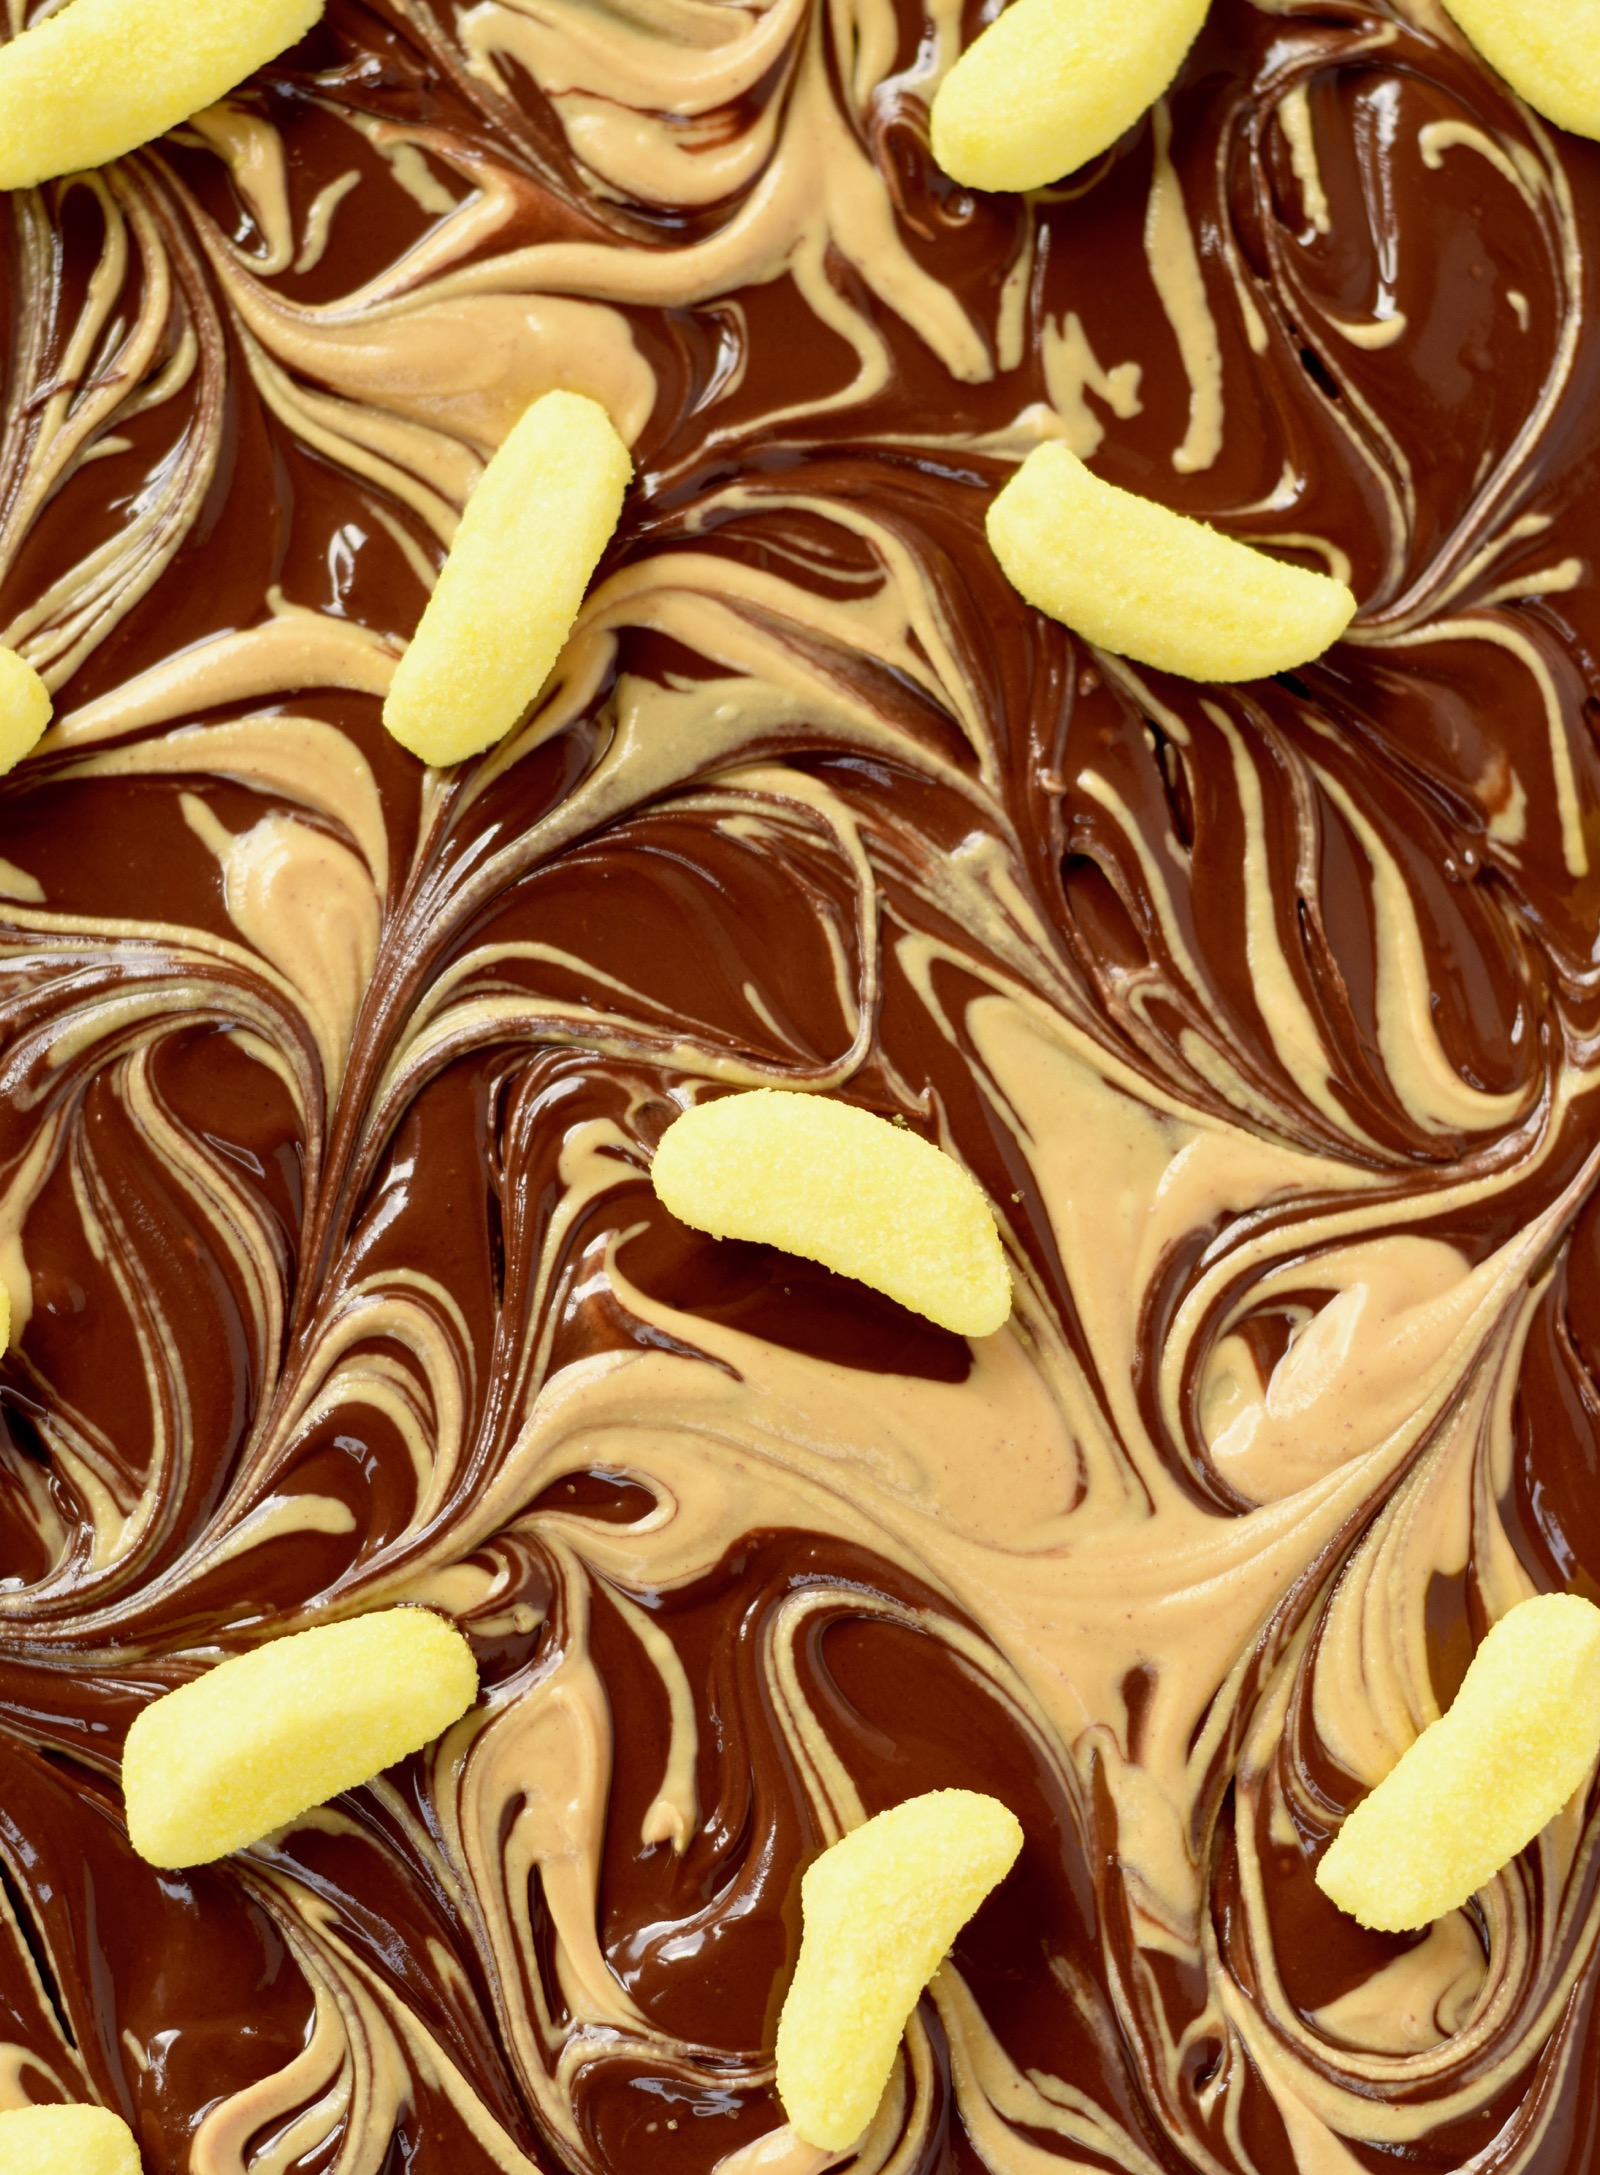 Chocolate Peanut Butter Banana Candy Bar Recipe